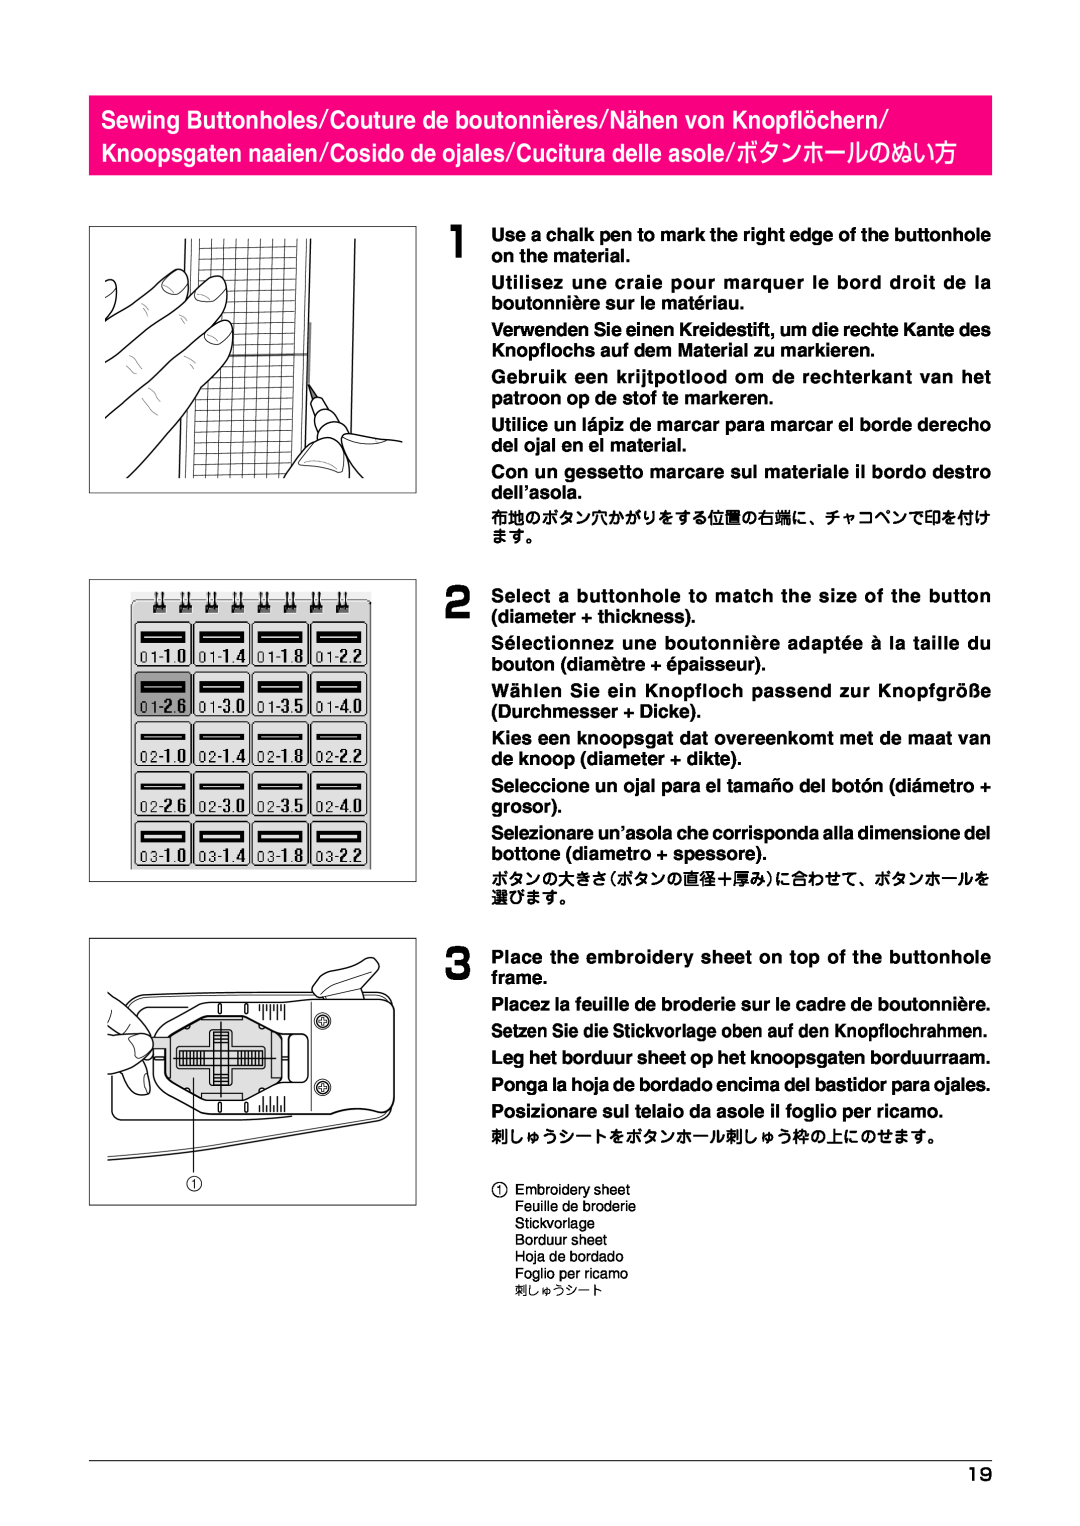 Brother Button Hole Kit operation manual Sewing Buttonholes/Couture de boutonnières/Nähen von Knopflöchern 